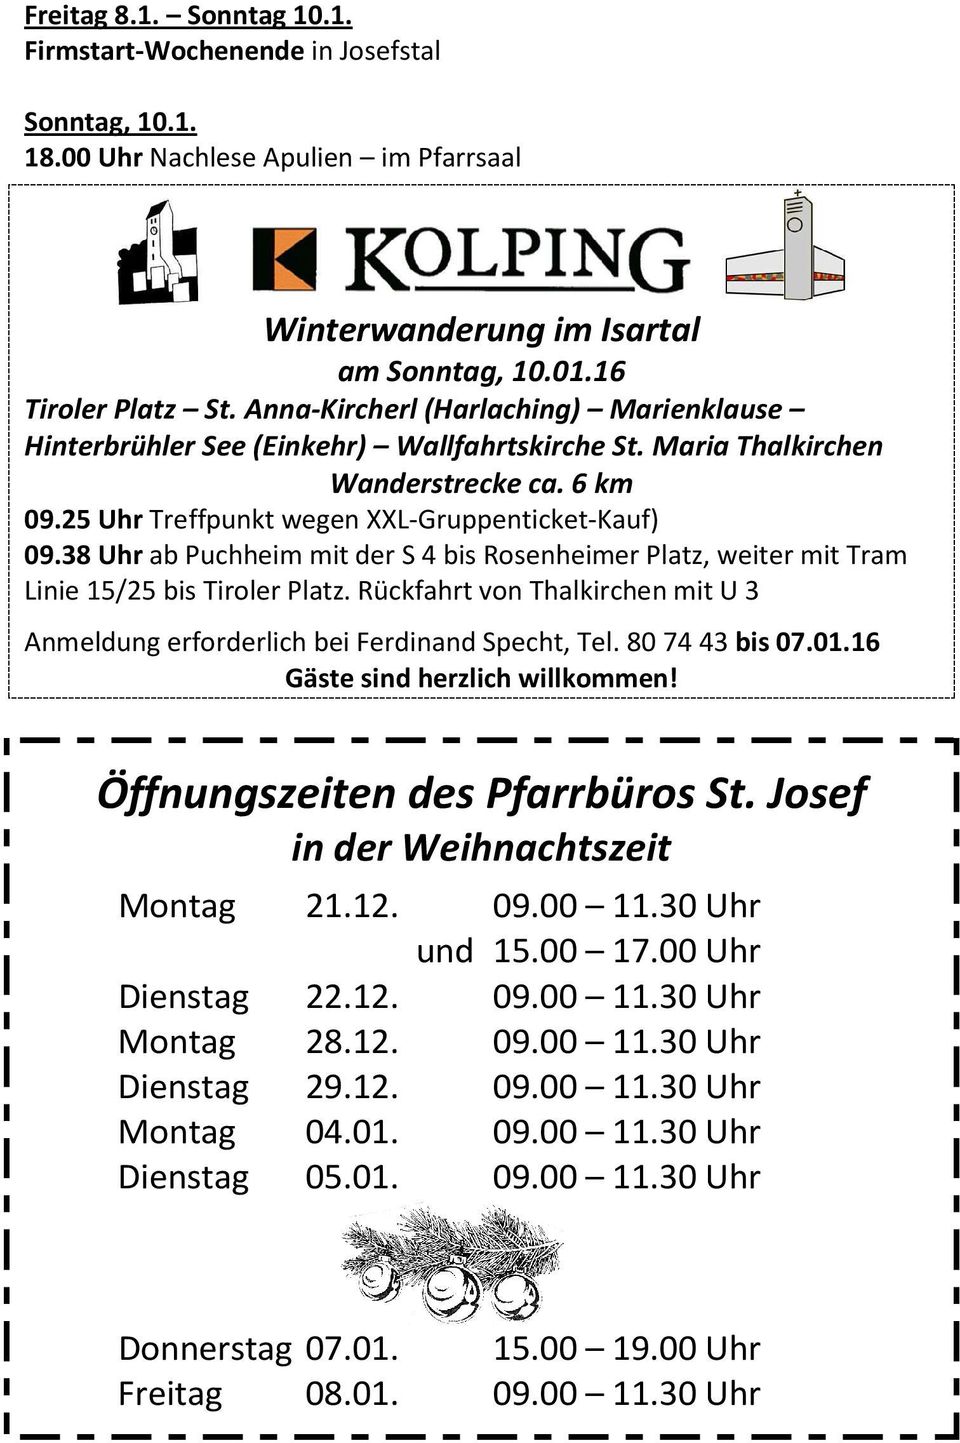 38 Uhr ab Puchheim mit der S 4 bis Rosenheimer Platz, weiter mit Tram Linie 15/25 bis Tiroler Platz. Rückfahrt von Thalkirchen mit U 3 Anmeldung erforderlich bei Ferdinand Specht, Tel.